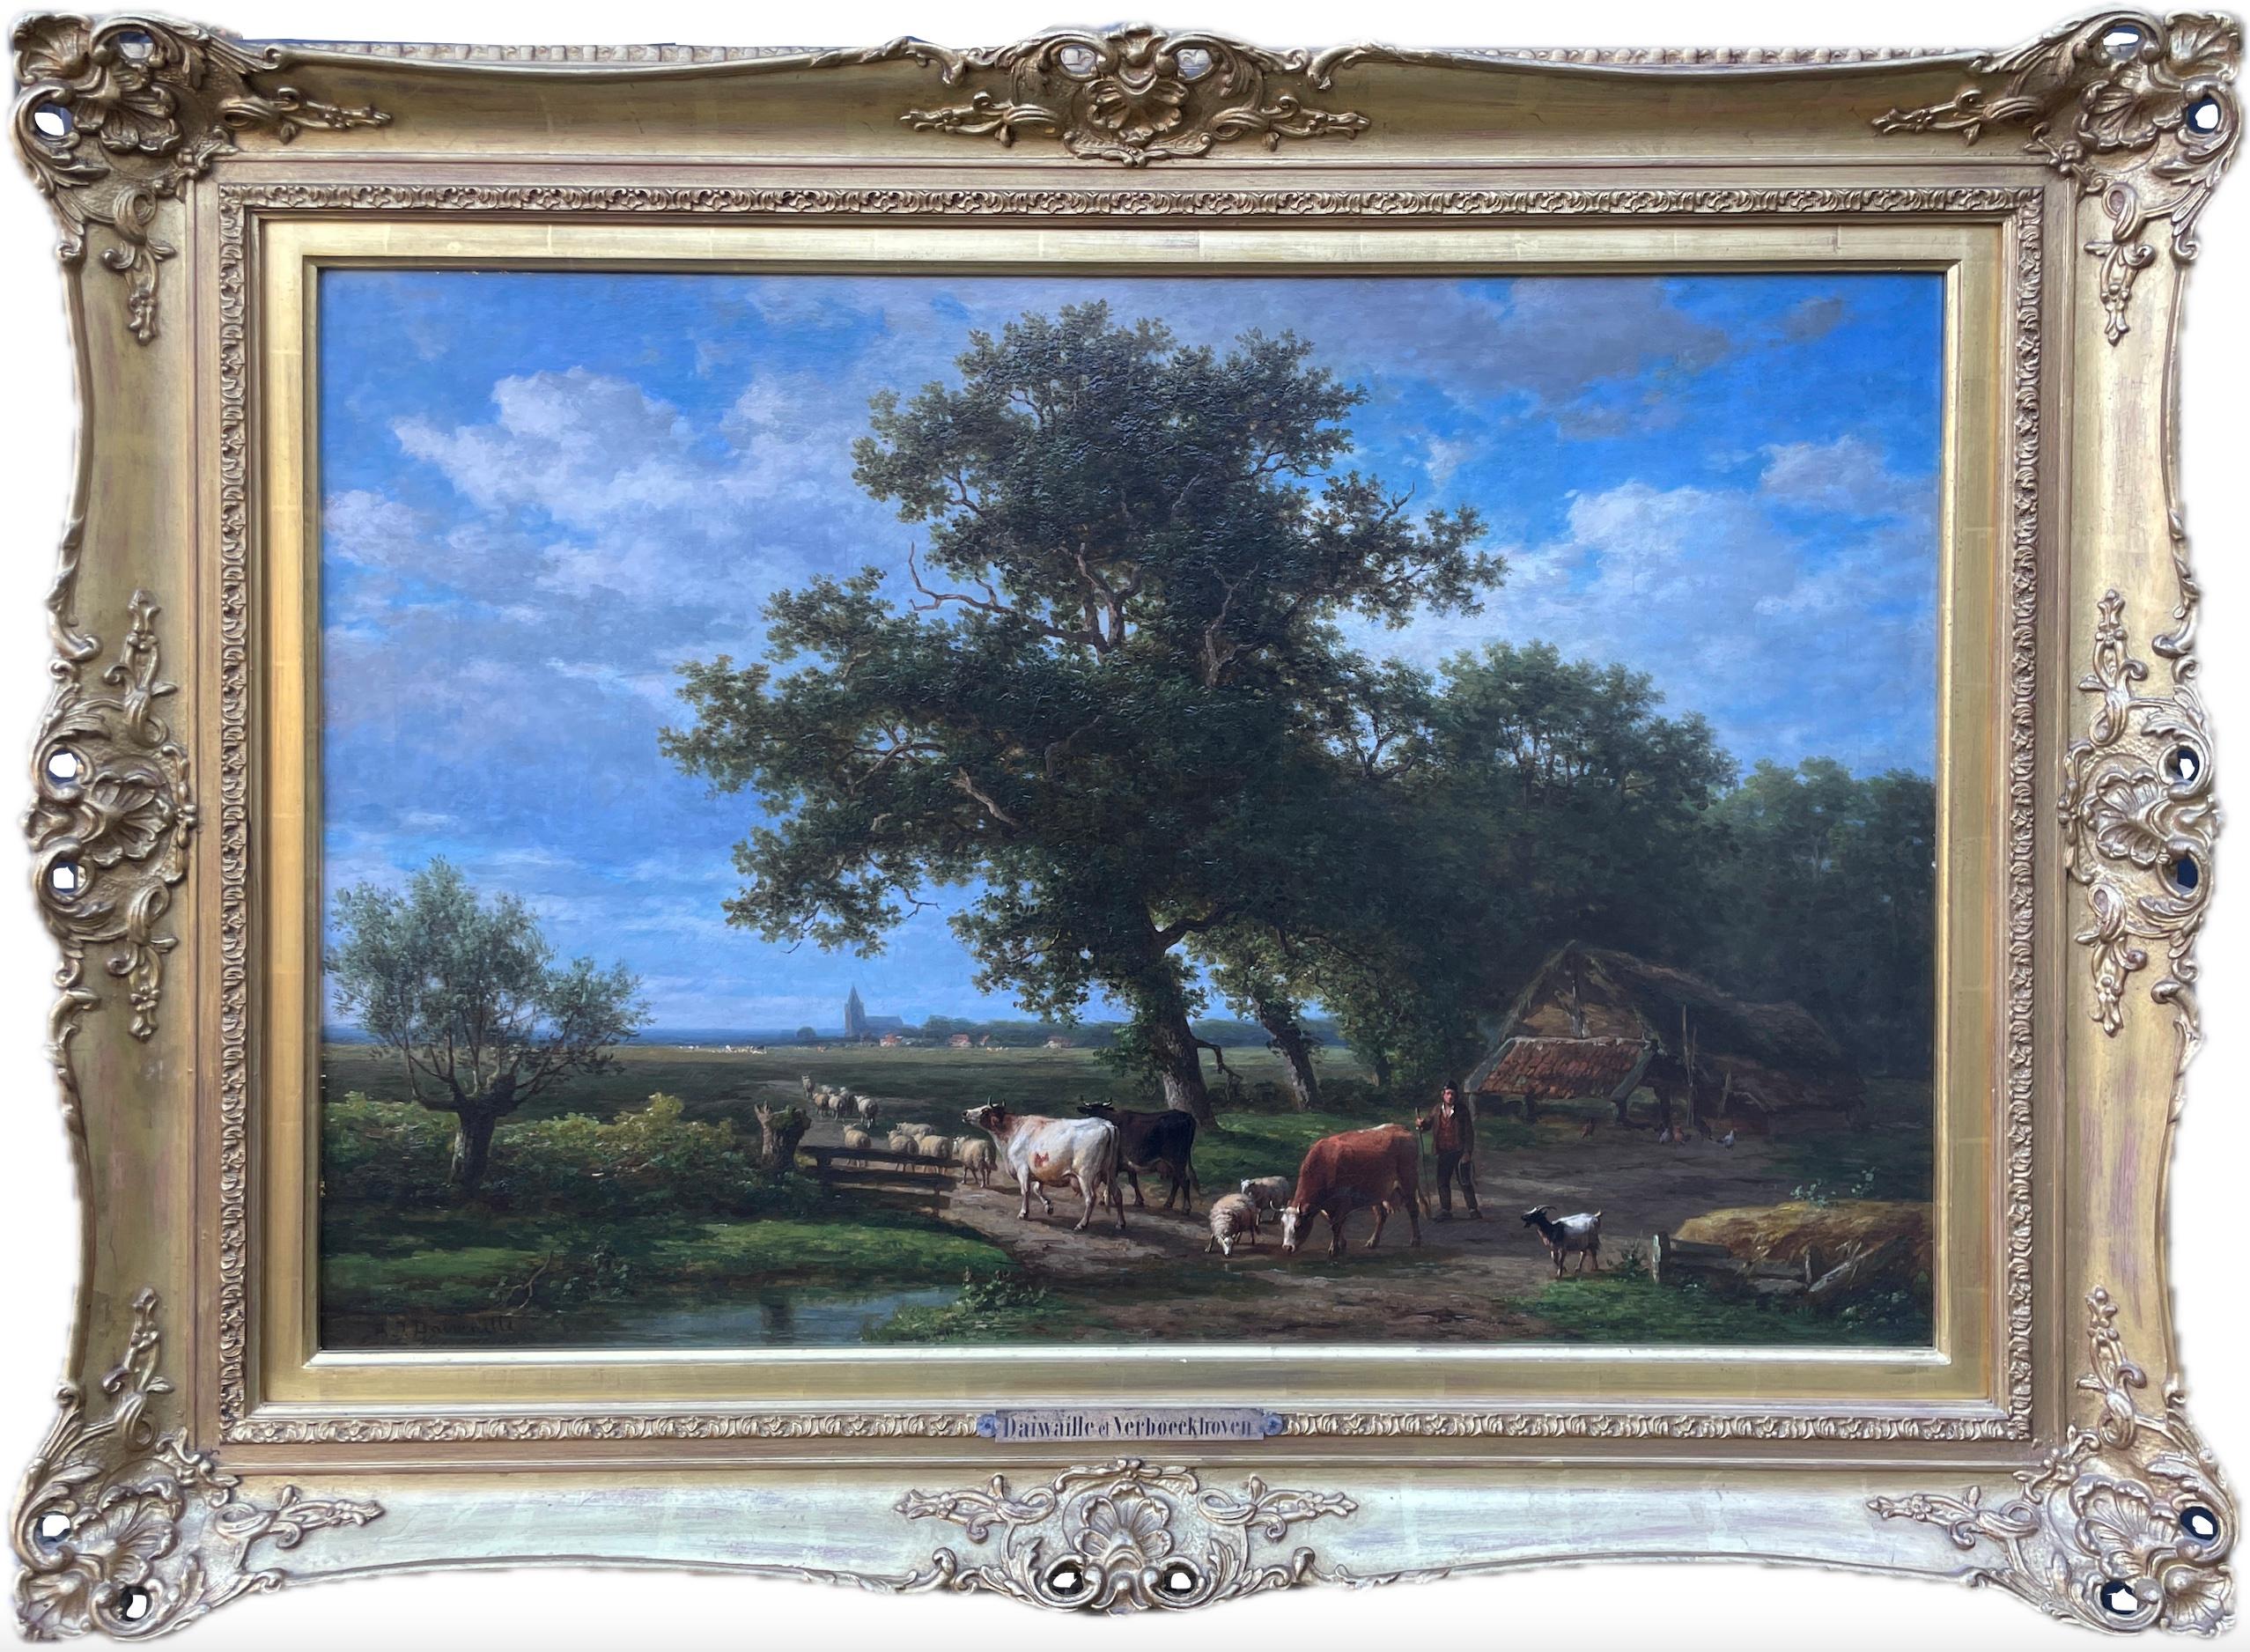 Huile sur toile d'Eugene Verboeckhoven & Alexander Daiwaille (1796-1881) - Painting de Eugène Verboeckhoven